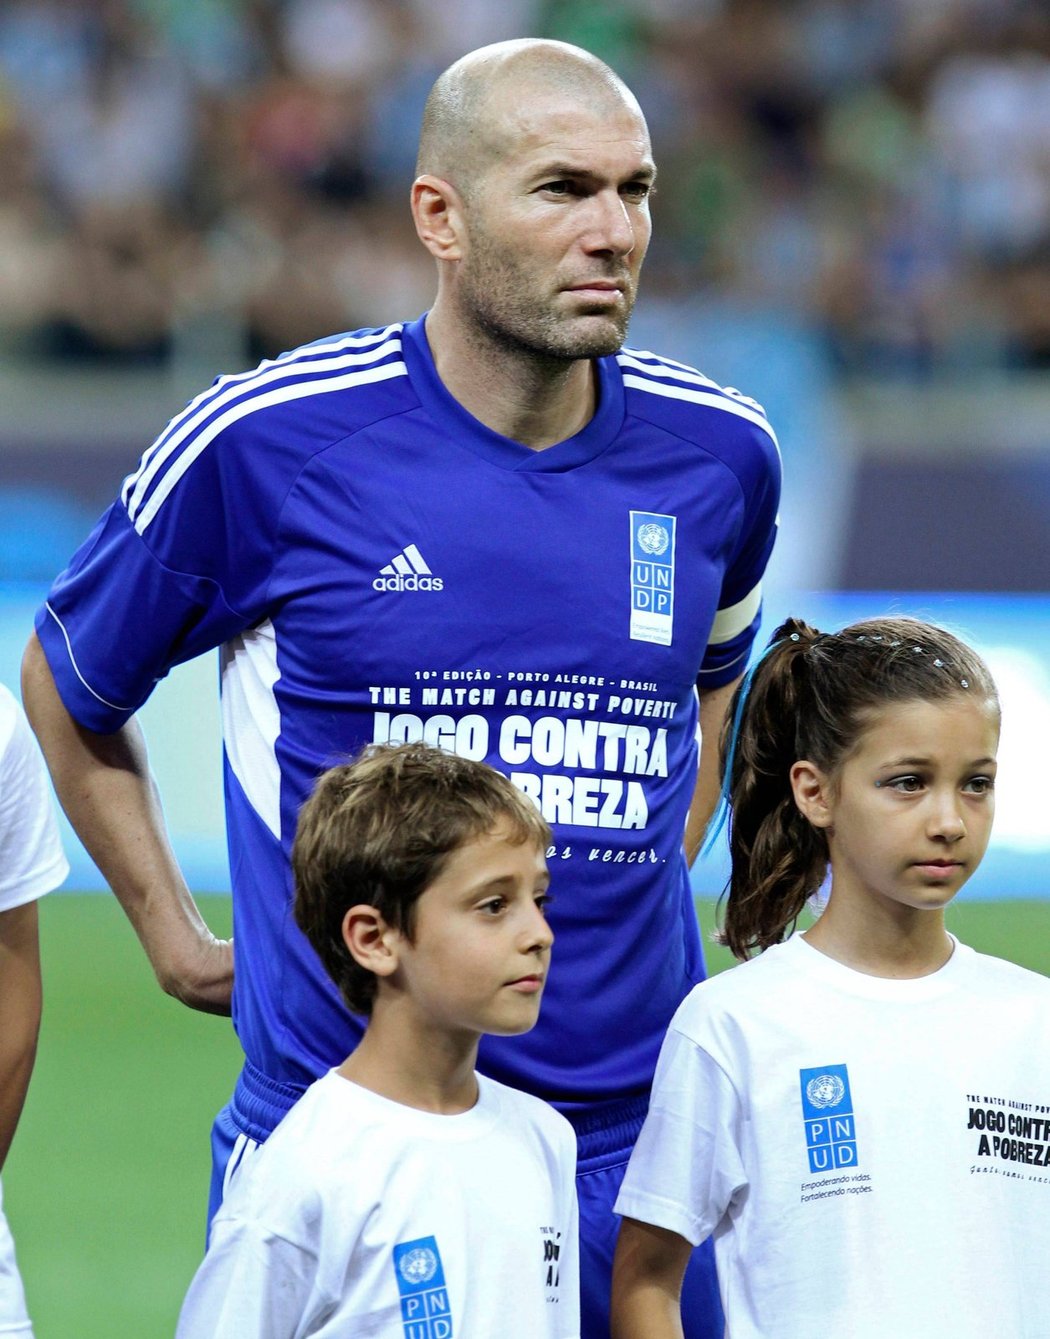 Zinédine Zidane patřil mezi nejvýraznější osobnosti exhibičního zápasu, který do brazilského Porto Alegre přilákal řadu současných i bývalých fotbalových hvězd.